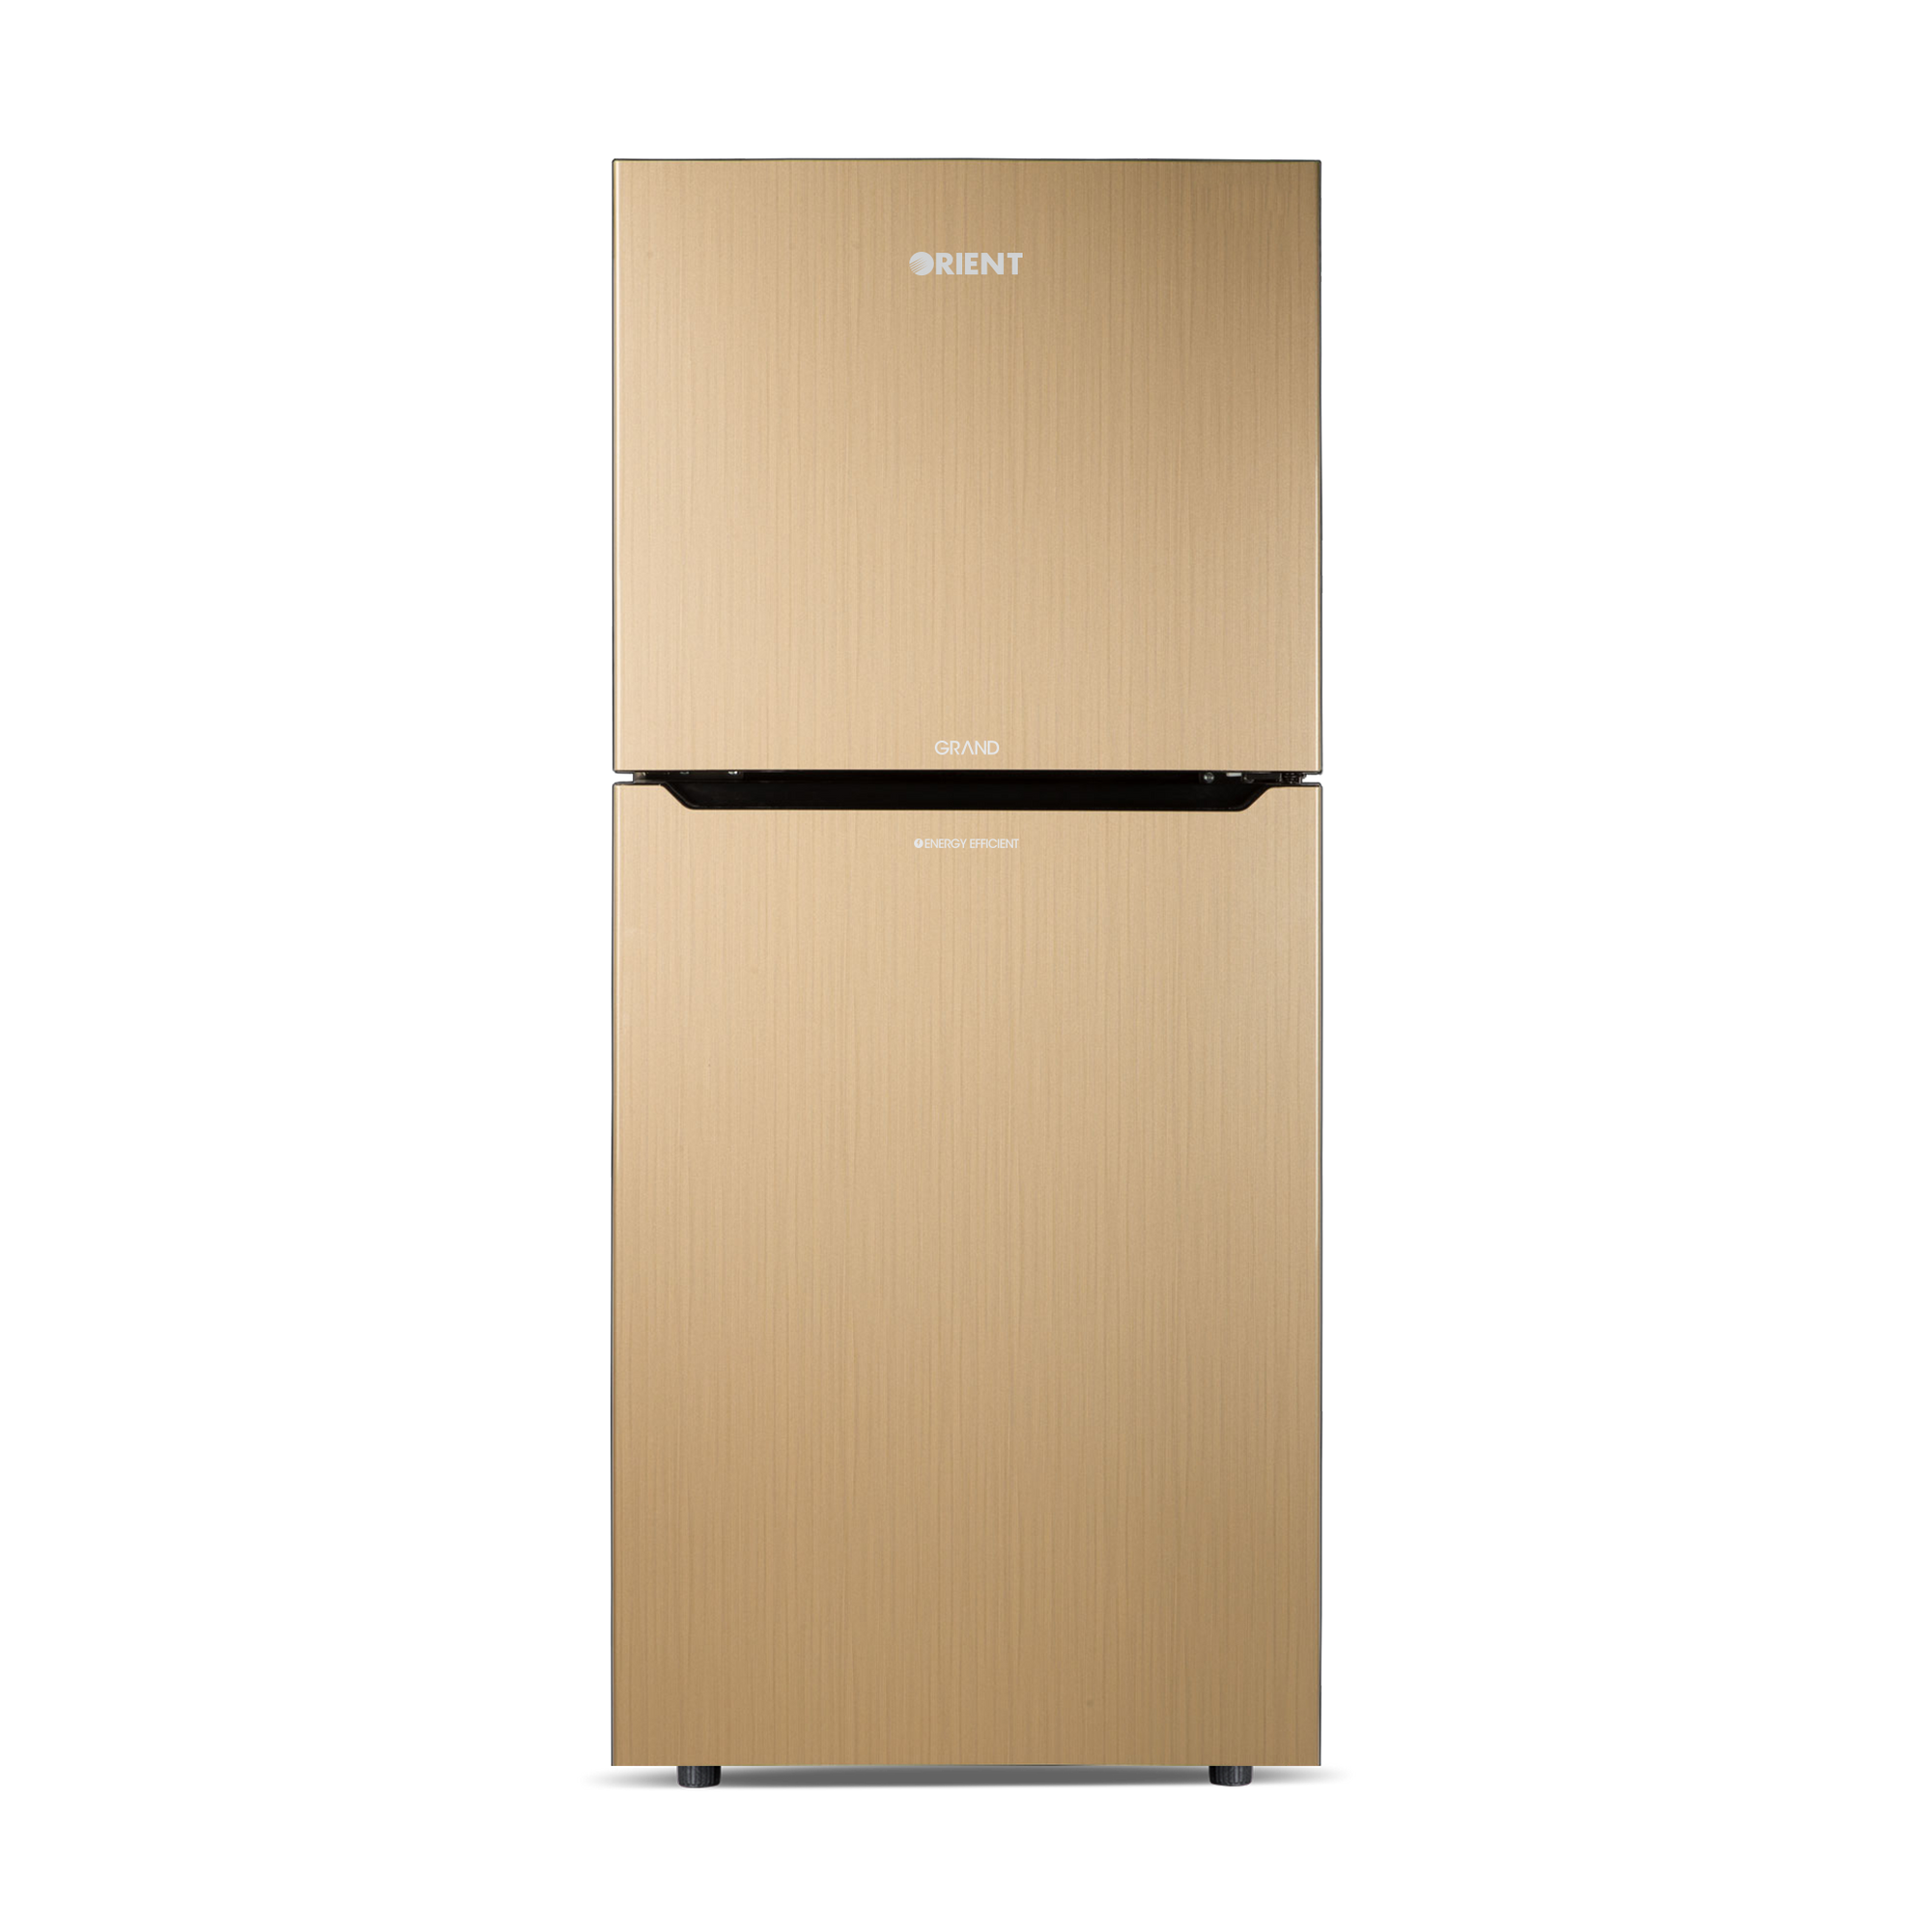 Orient Refrigerator Double Door - 265 Grand VCM